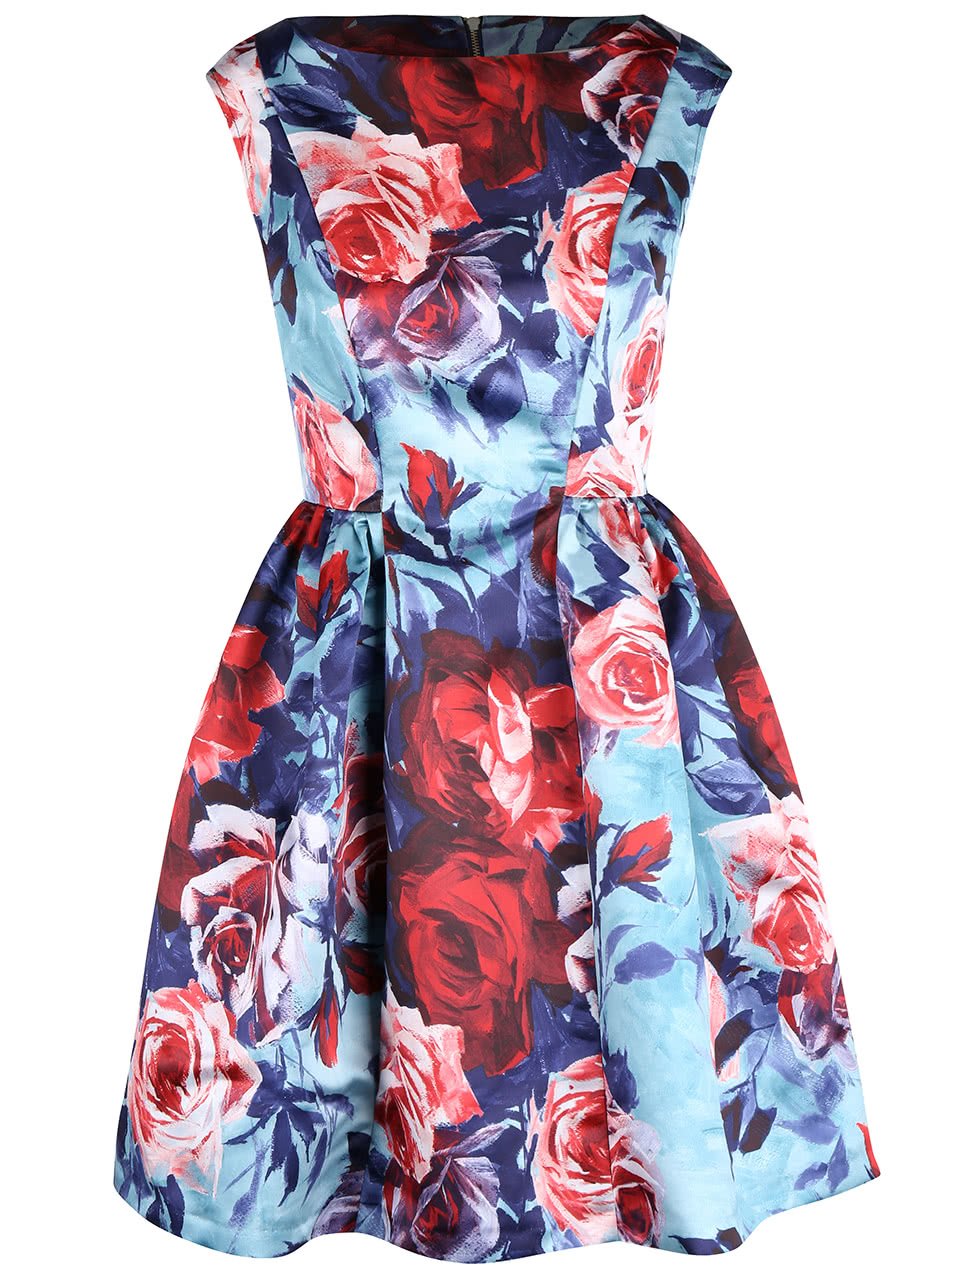 Modré šaty s potiskem růží Closet